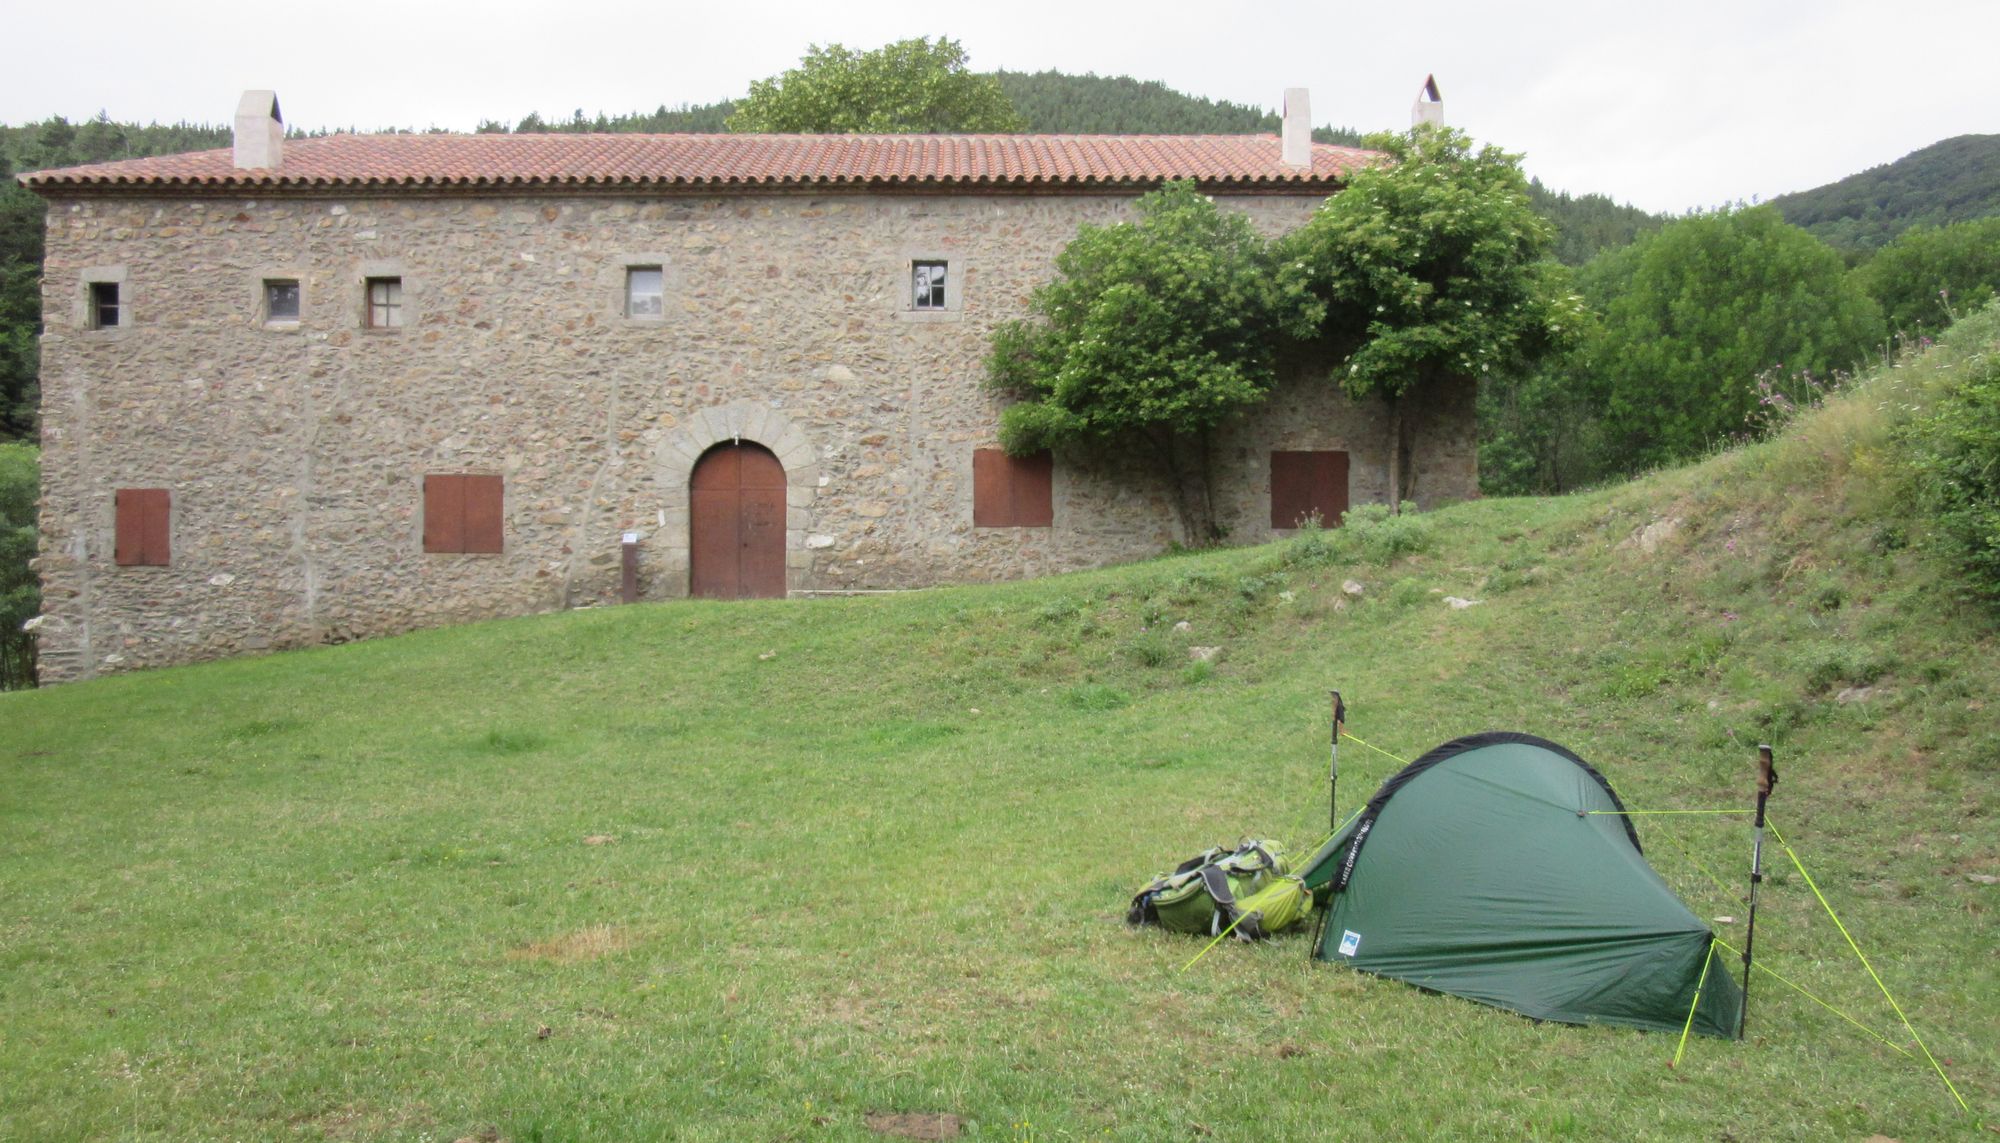 Camped on the lawn outside Ermita de las Salinas.